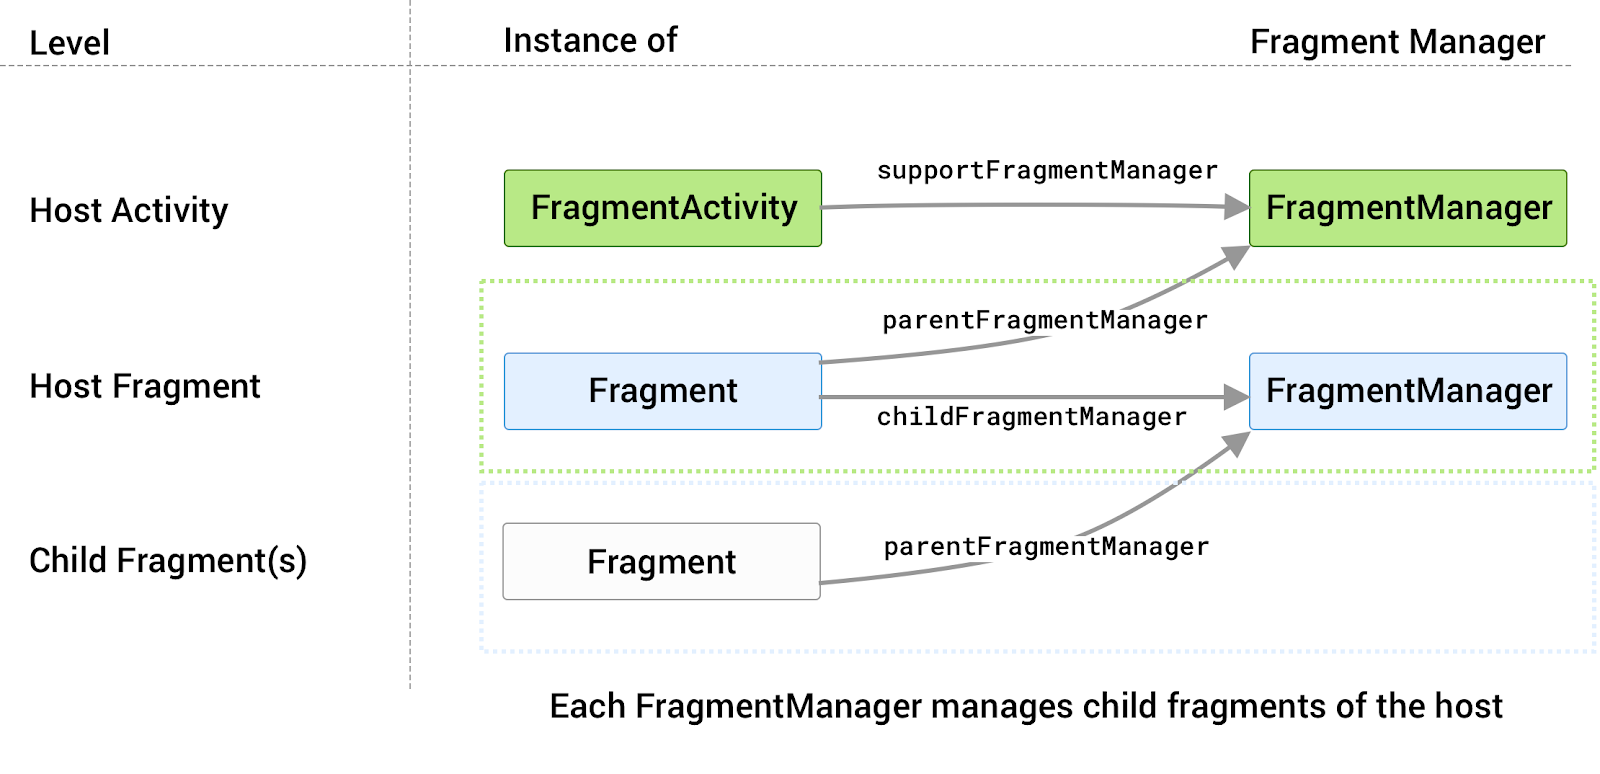 a ogni host è associato il proprio FragmentManager che gestisce i relativi frammenti figlio